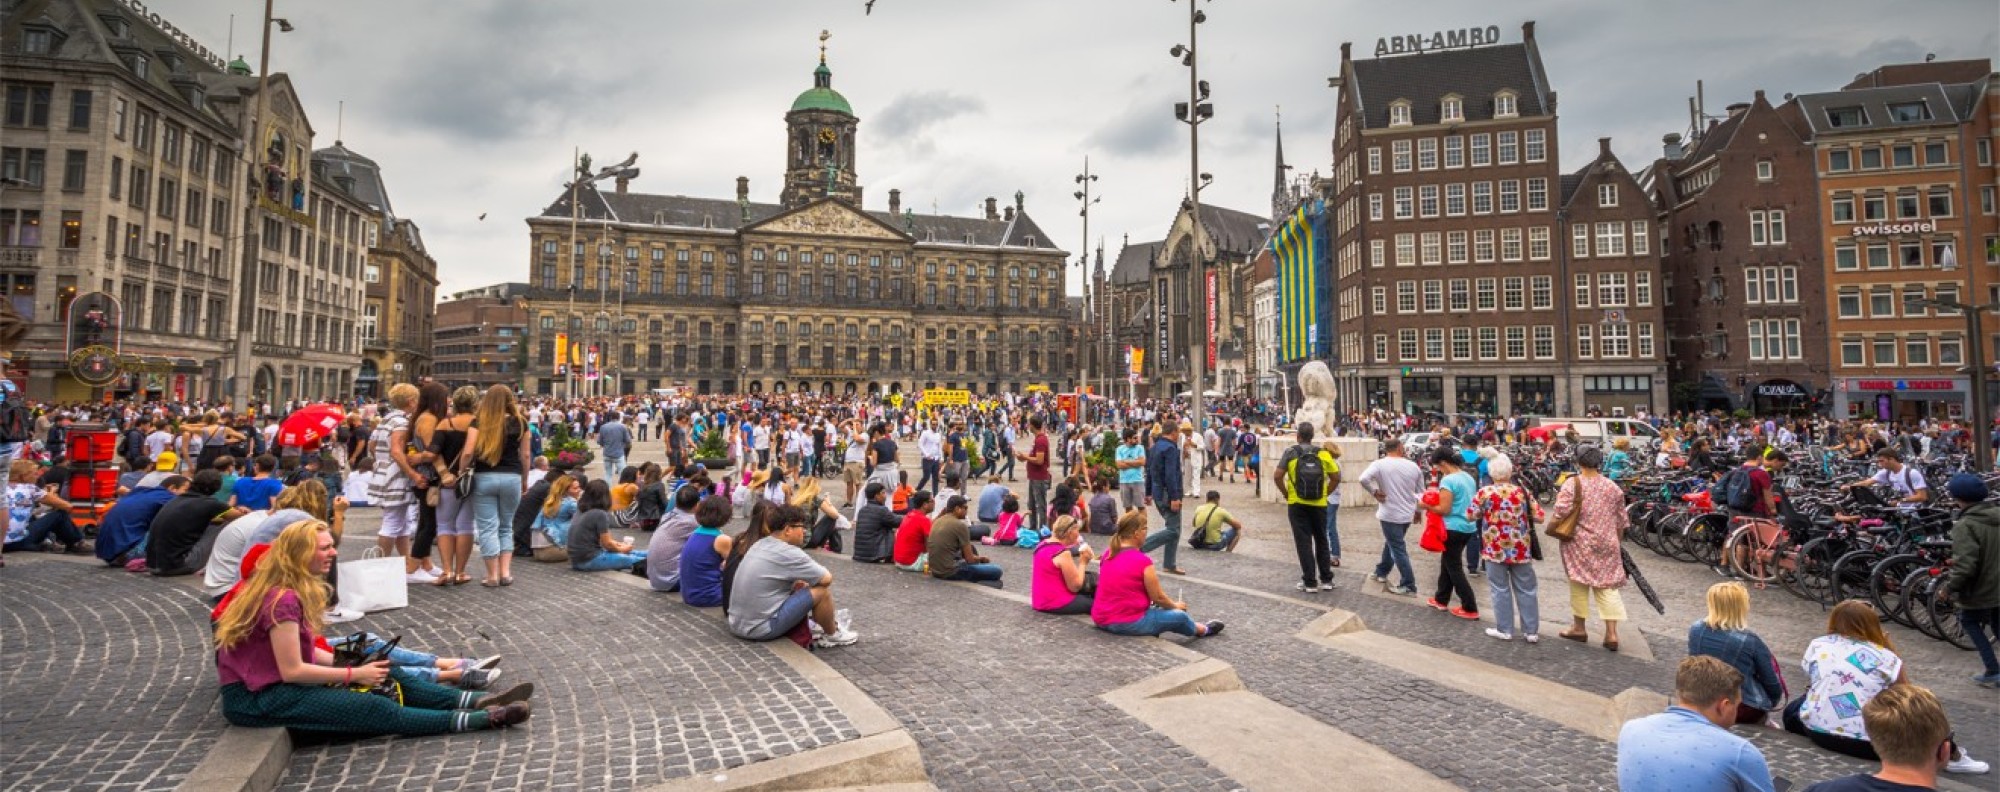 Amsterdam's female mayor considers pulling plug on red light